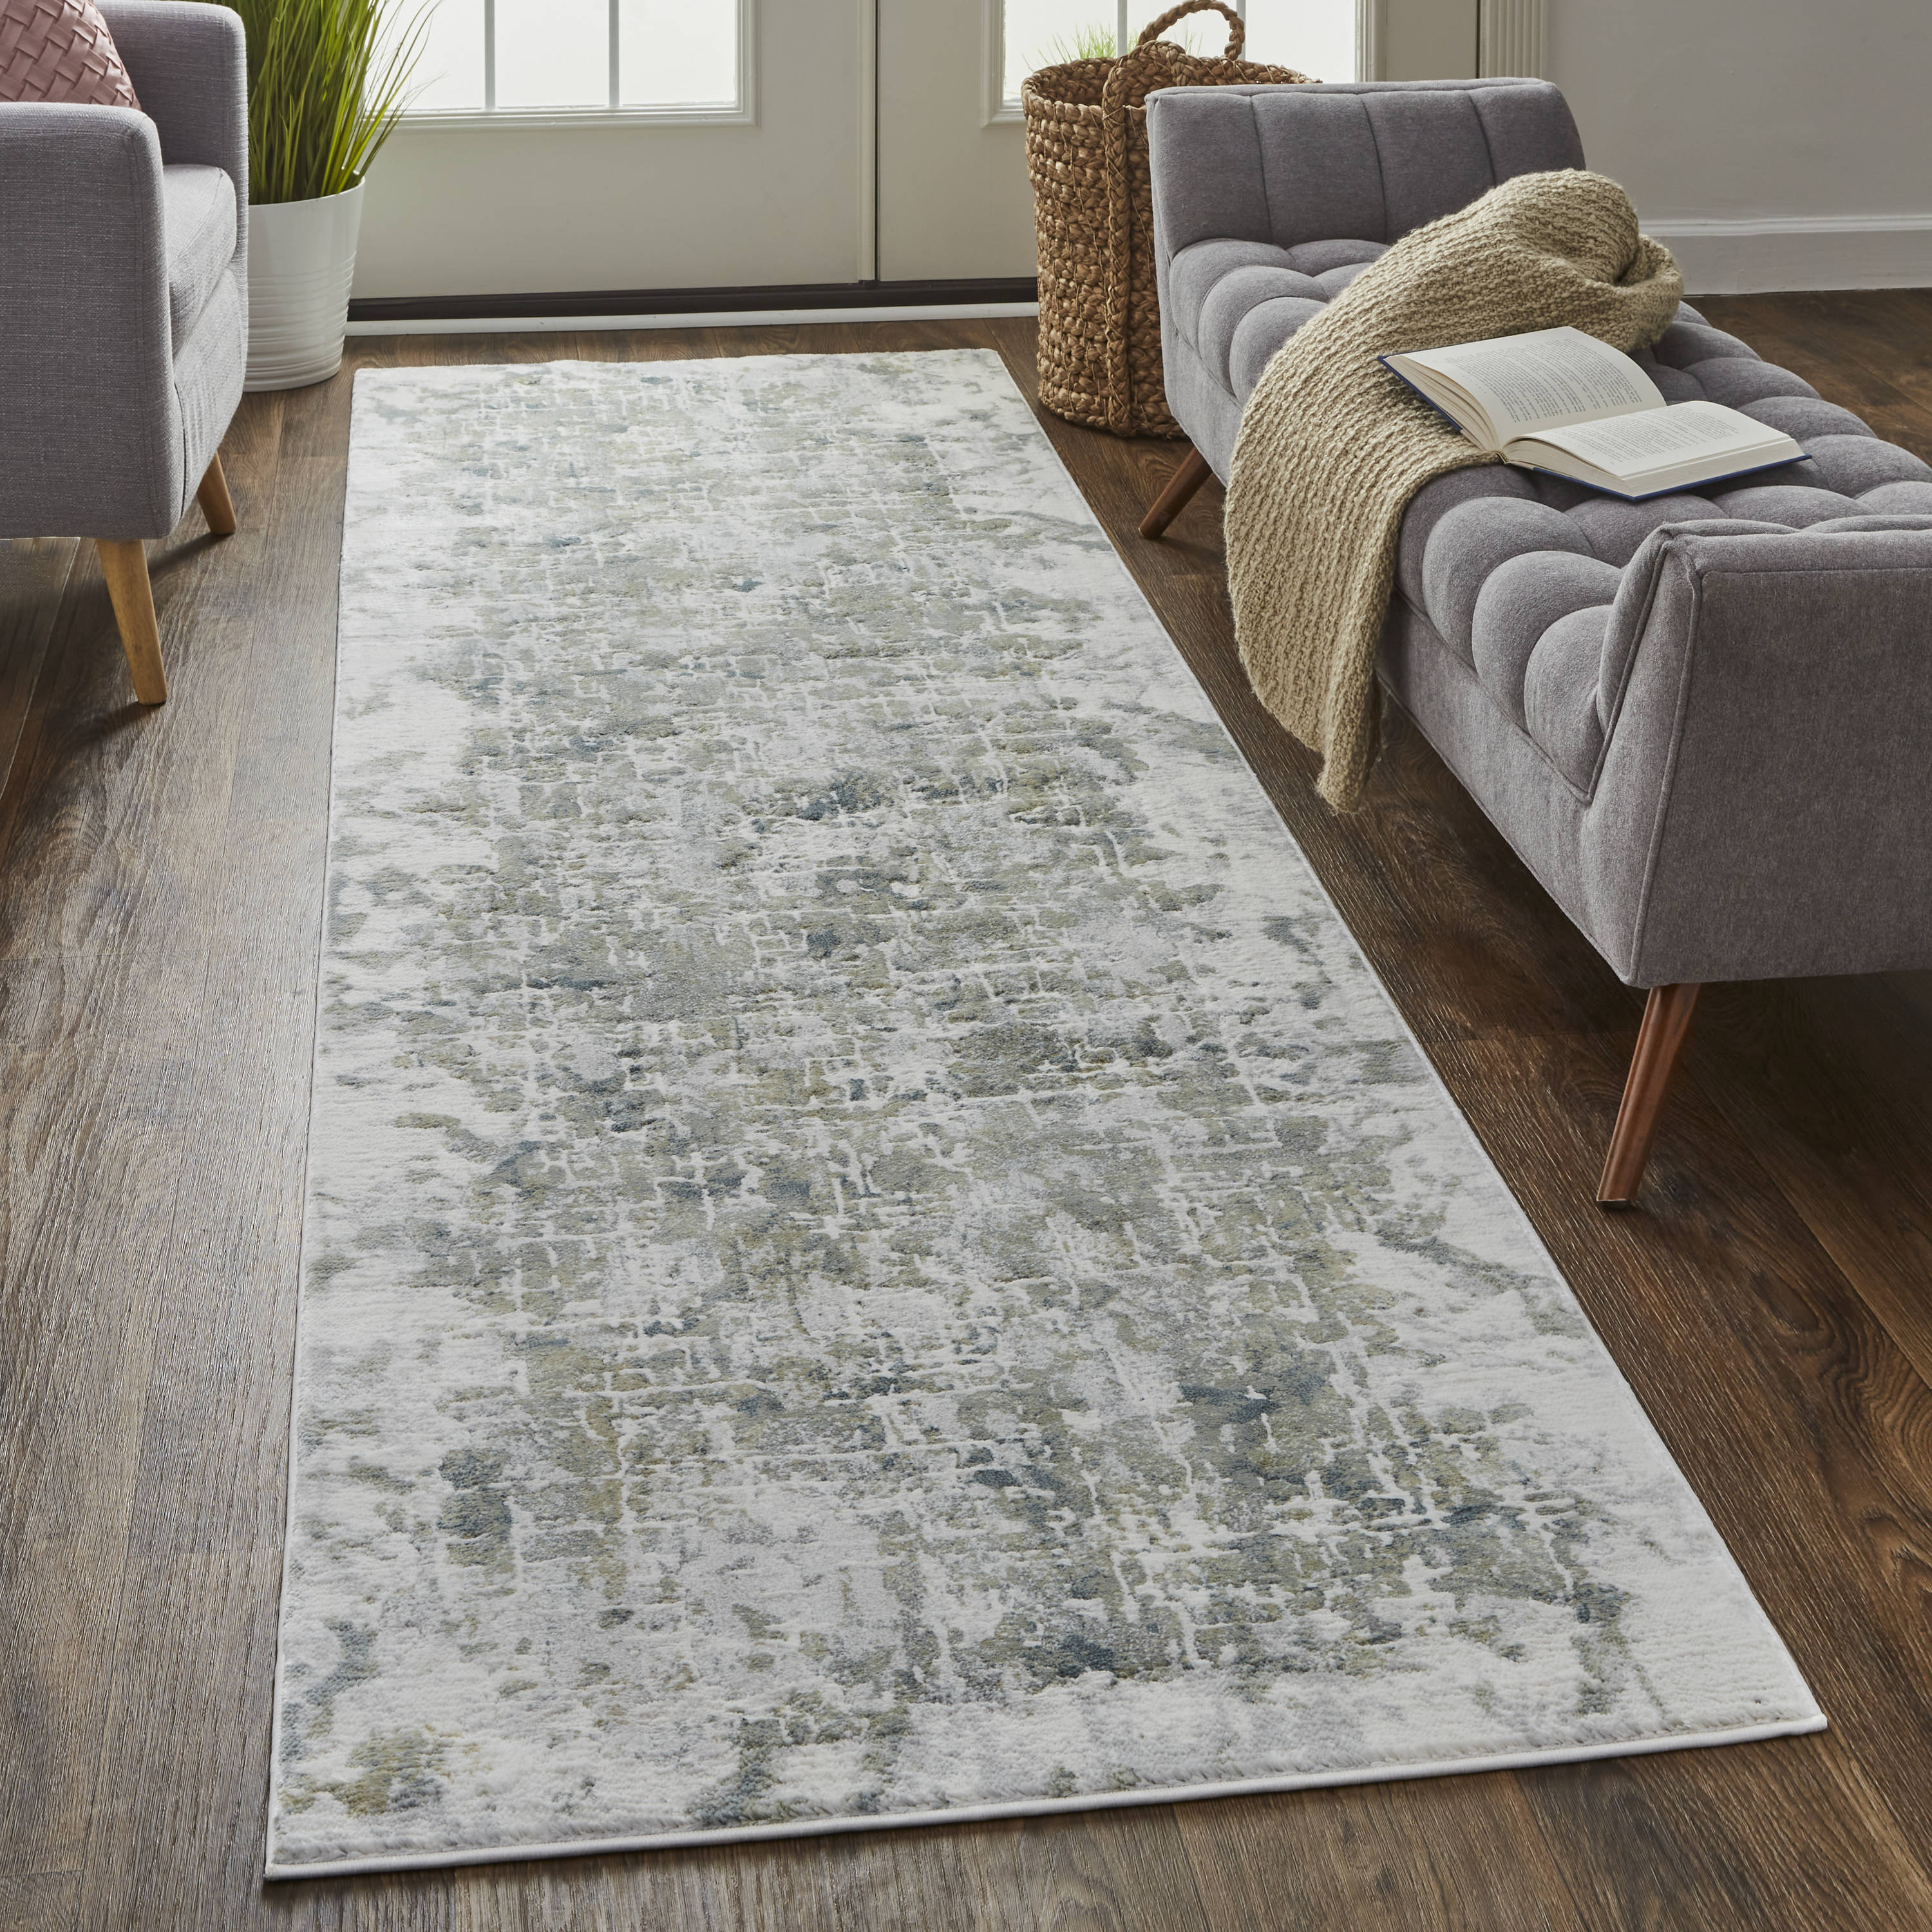 Grunge Plank Rustic Wood Board Area Rugs Living Room Carpets Bedroom Floor Mat 